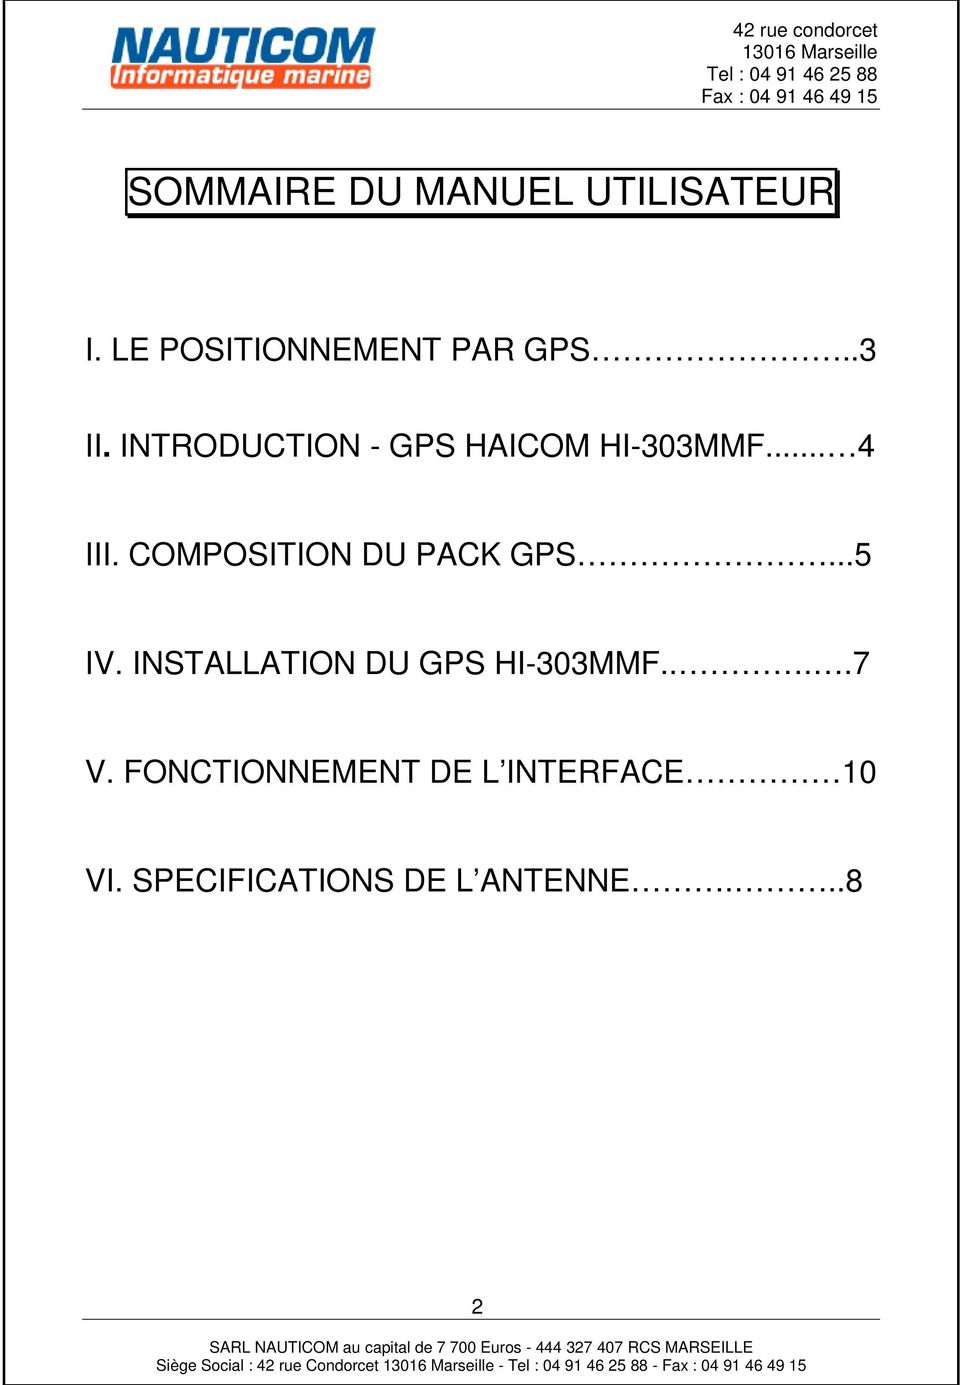 COMPOSITION DU PACK GPS...5 IV. INSTALLATION DU GPS HI-303MMF.